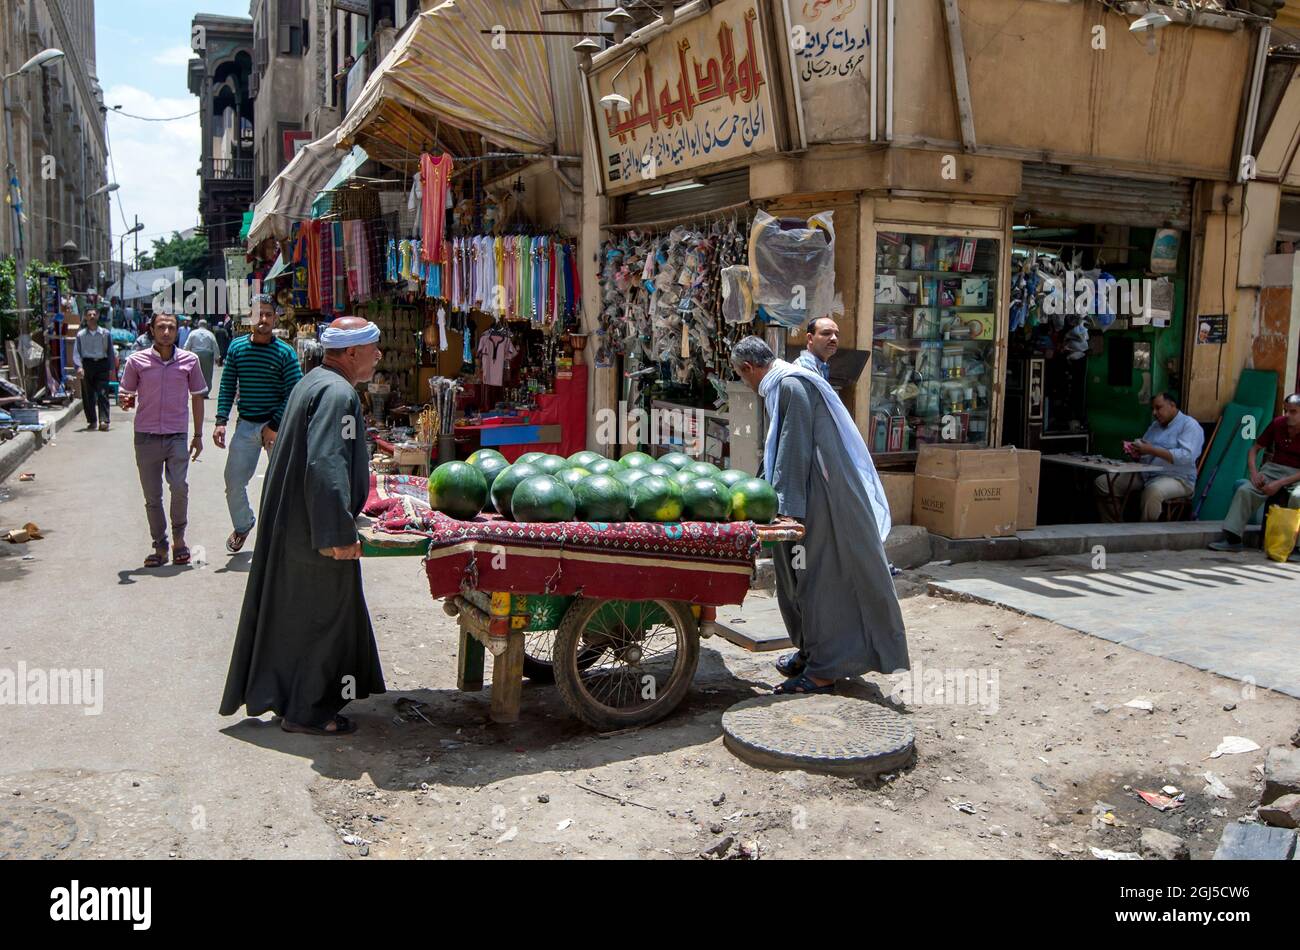 Los hombres transportan un carro cargado de sandías a través de una calle en el Bazar Khan el-Khalili en El Cairo, Egipto. Foto de stock